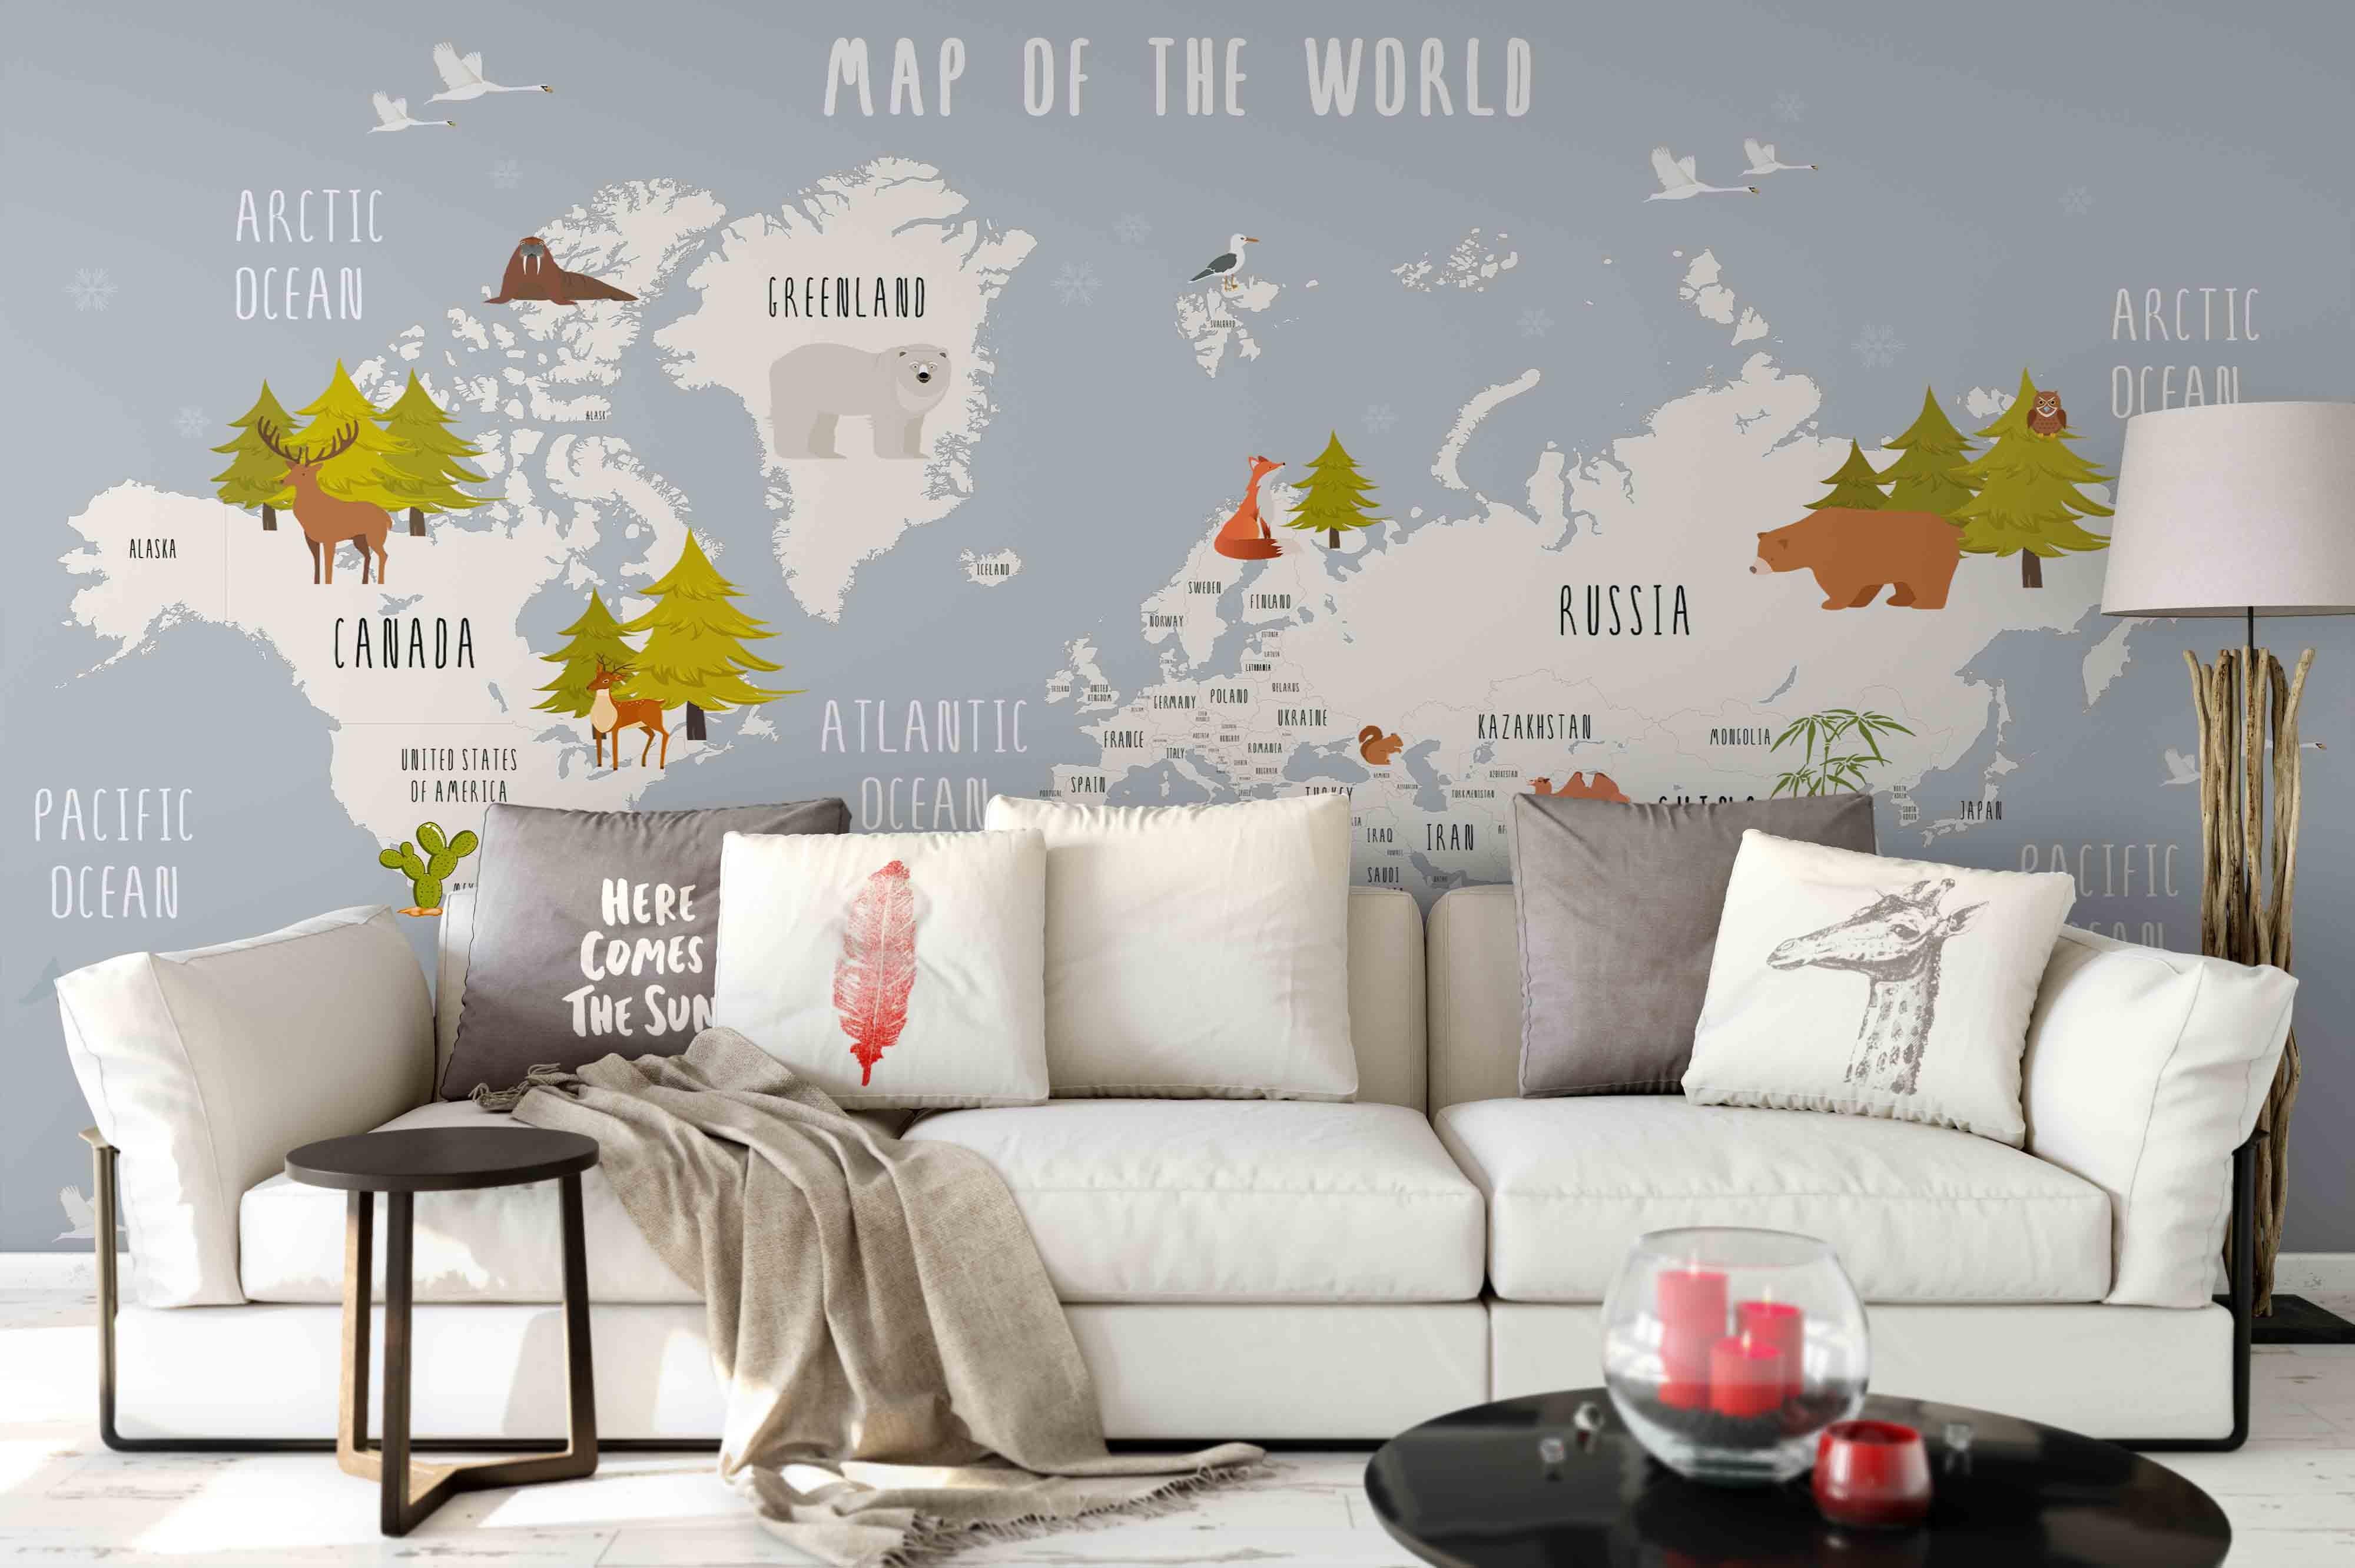 3D World Map Wall Mural Wallpaper 93- Jess Art Decoration